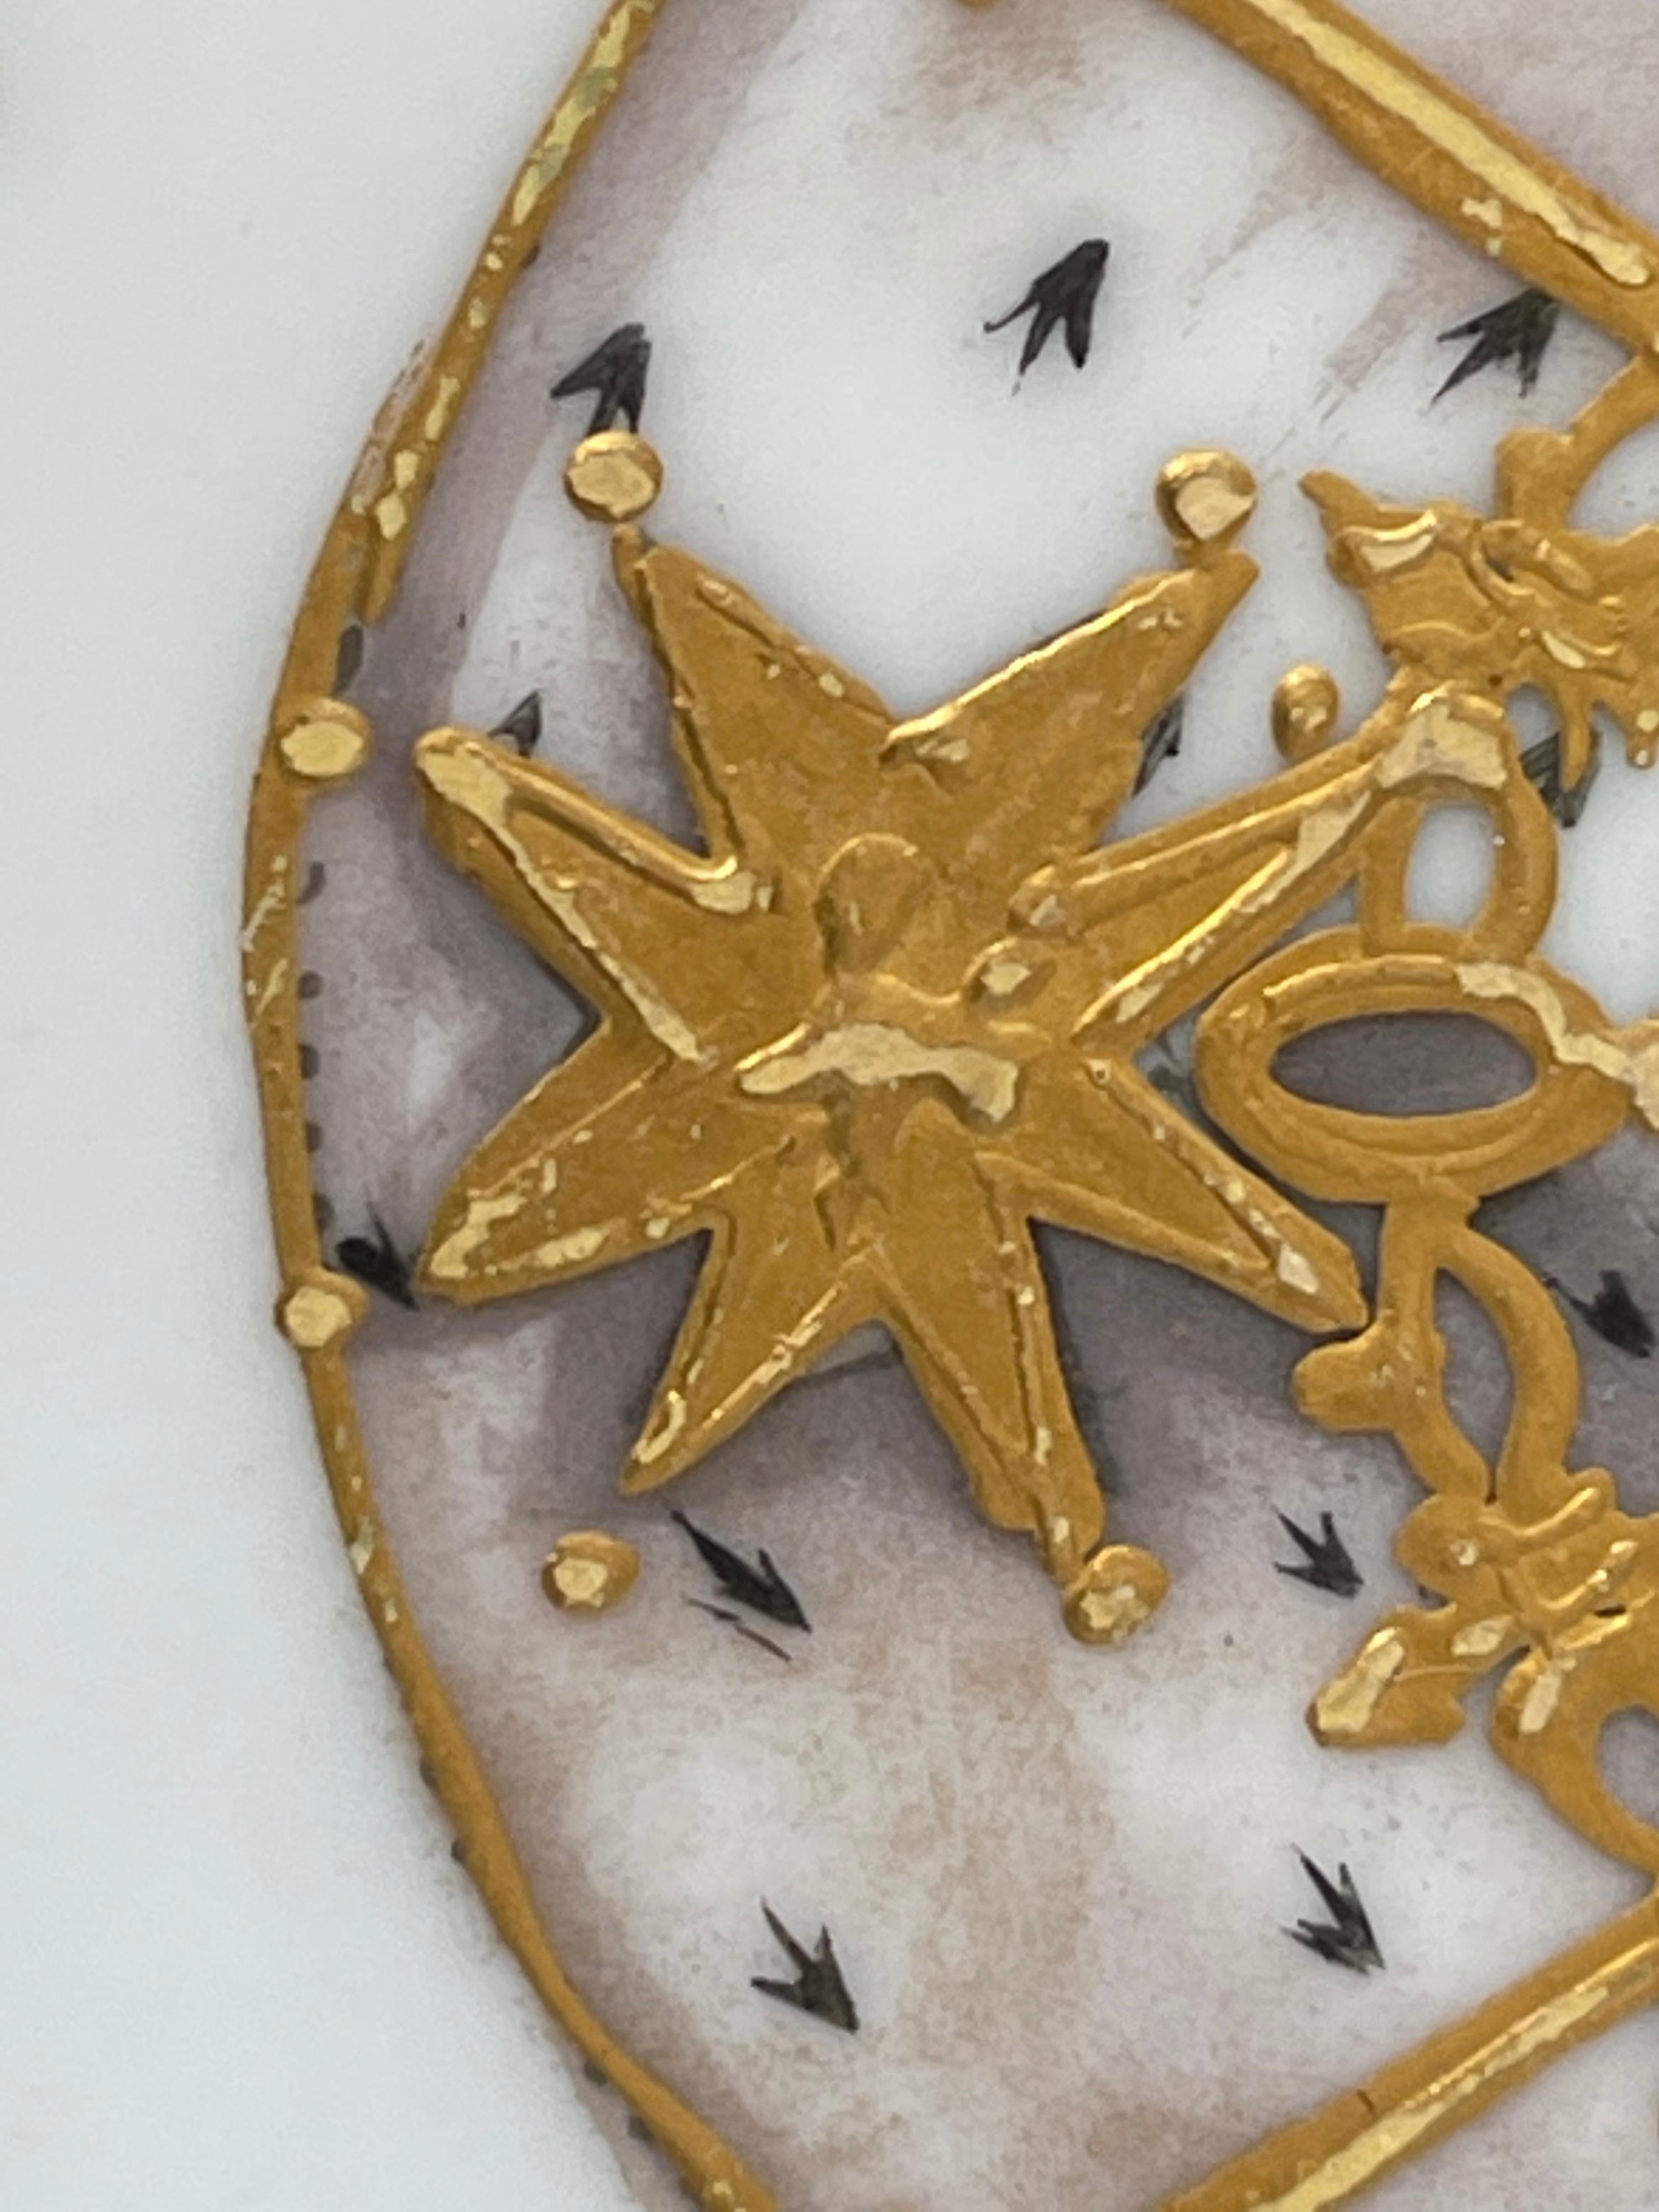 Ensemble de 12 assiettes de cabinet en porcelaine de Samson, décorées à la main en or 24 carats avec l'écusson du Château des Tuileries.
L'ensemble est un héritage familial provenant de la succession du PDG de Woolworth, Byron Miller, grâce à la